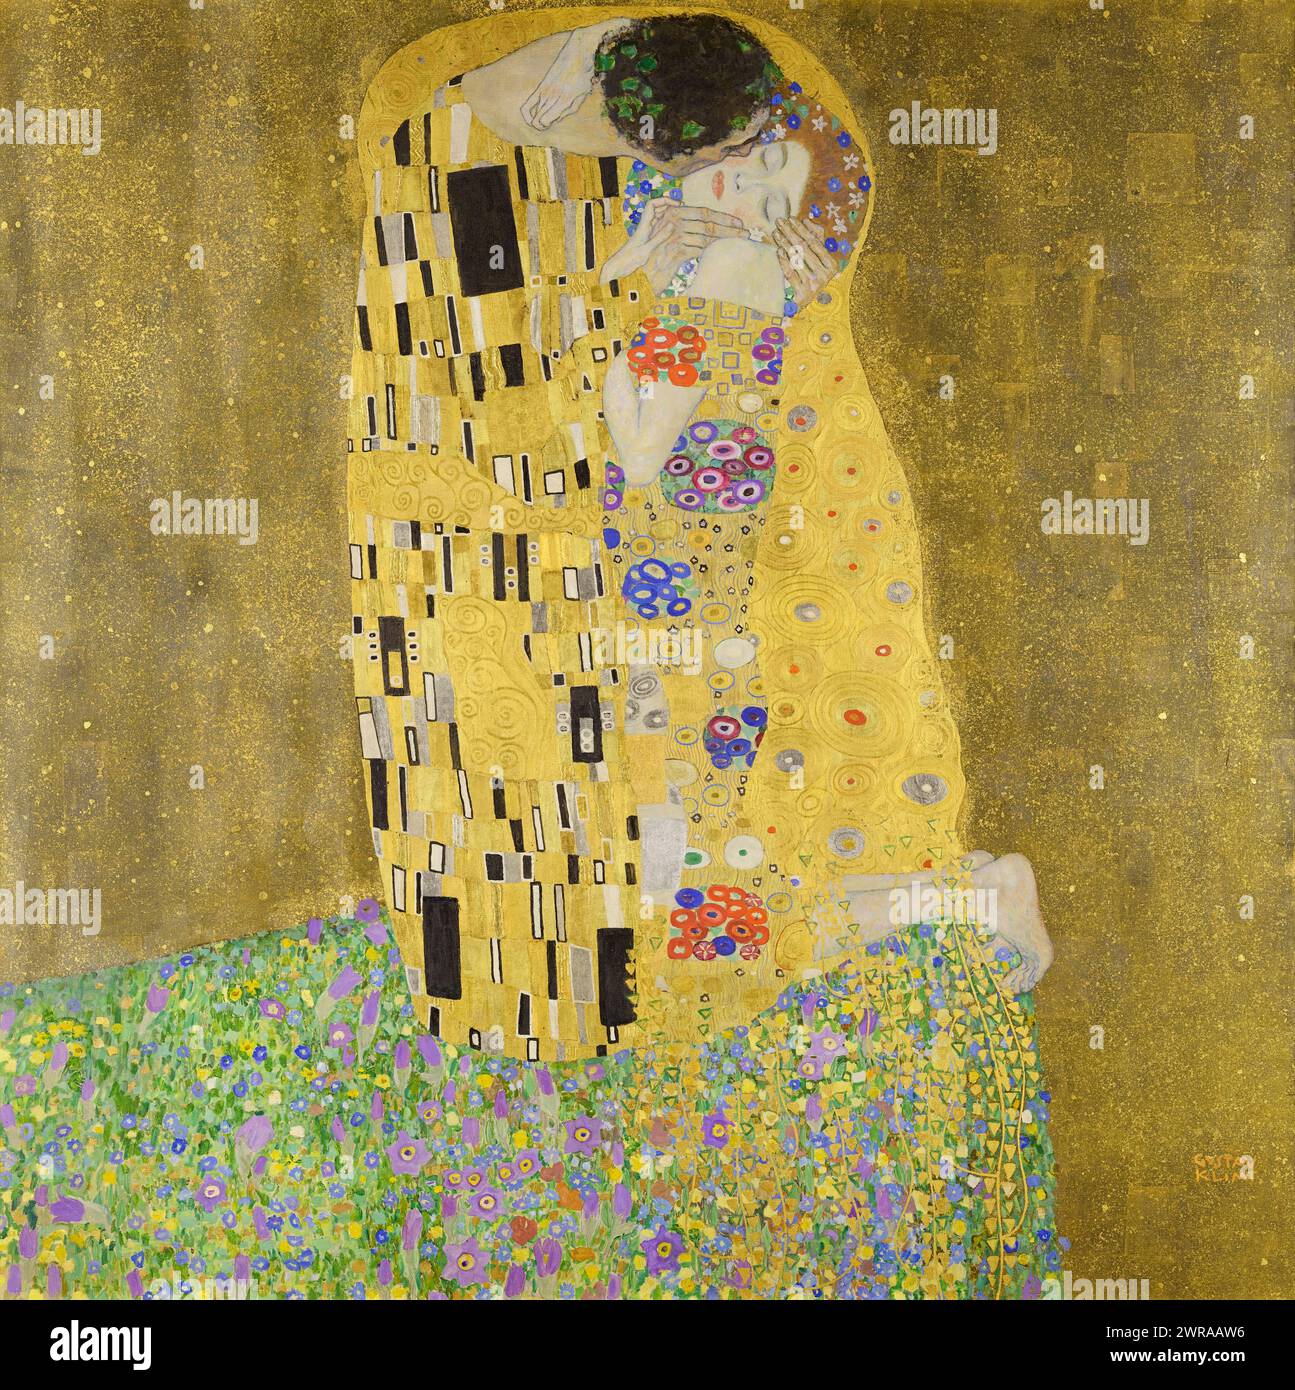 Il bacio dell'artista austriaco Gustav Klimt (1862-1918) dipinto 1907-08. Un capolavoro della Secessione viennese che mostra due amanti che abbracciano abiti decorativi dipinti a olio con foglie d'oro. Crediti: Österreichische Galerie Belvedere / Archivio universale d'Arte Foto Stock